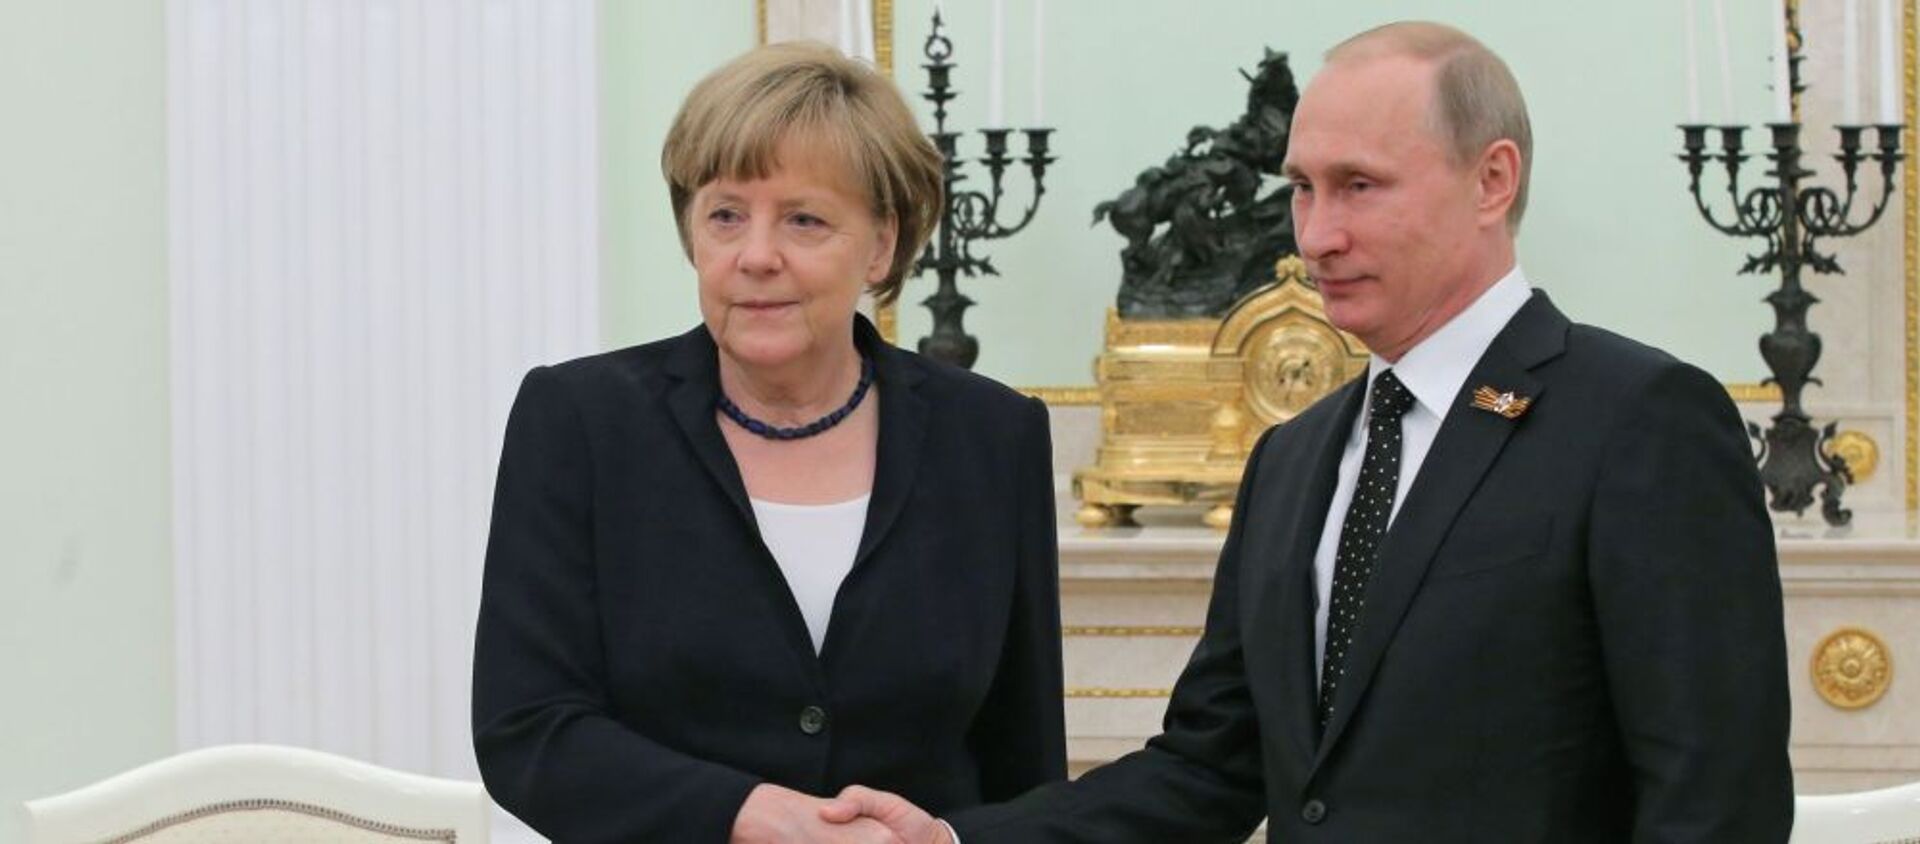 Tổng thống Nga Vladimir Putin và Thủ tướng Đức Angela Merkel - Sputnik Việt Nam, 1920, 15.07.2020